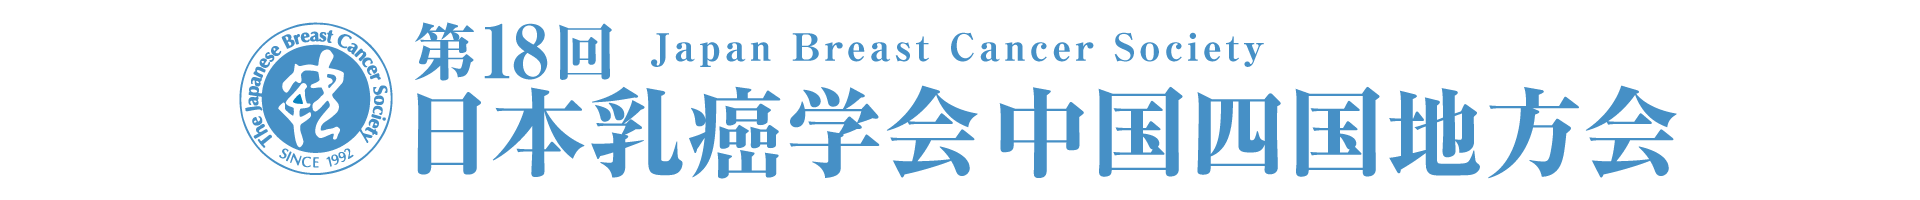 第18回日本乳癌学会中国四国地方会